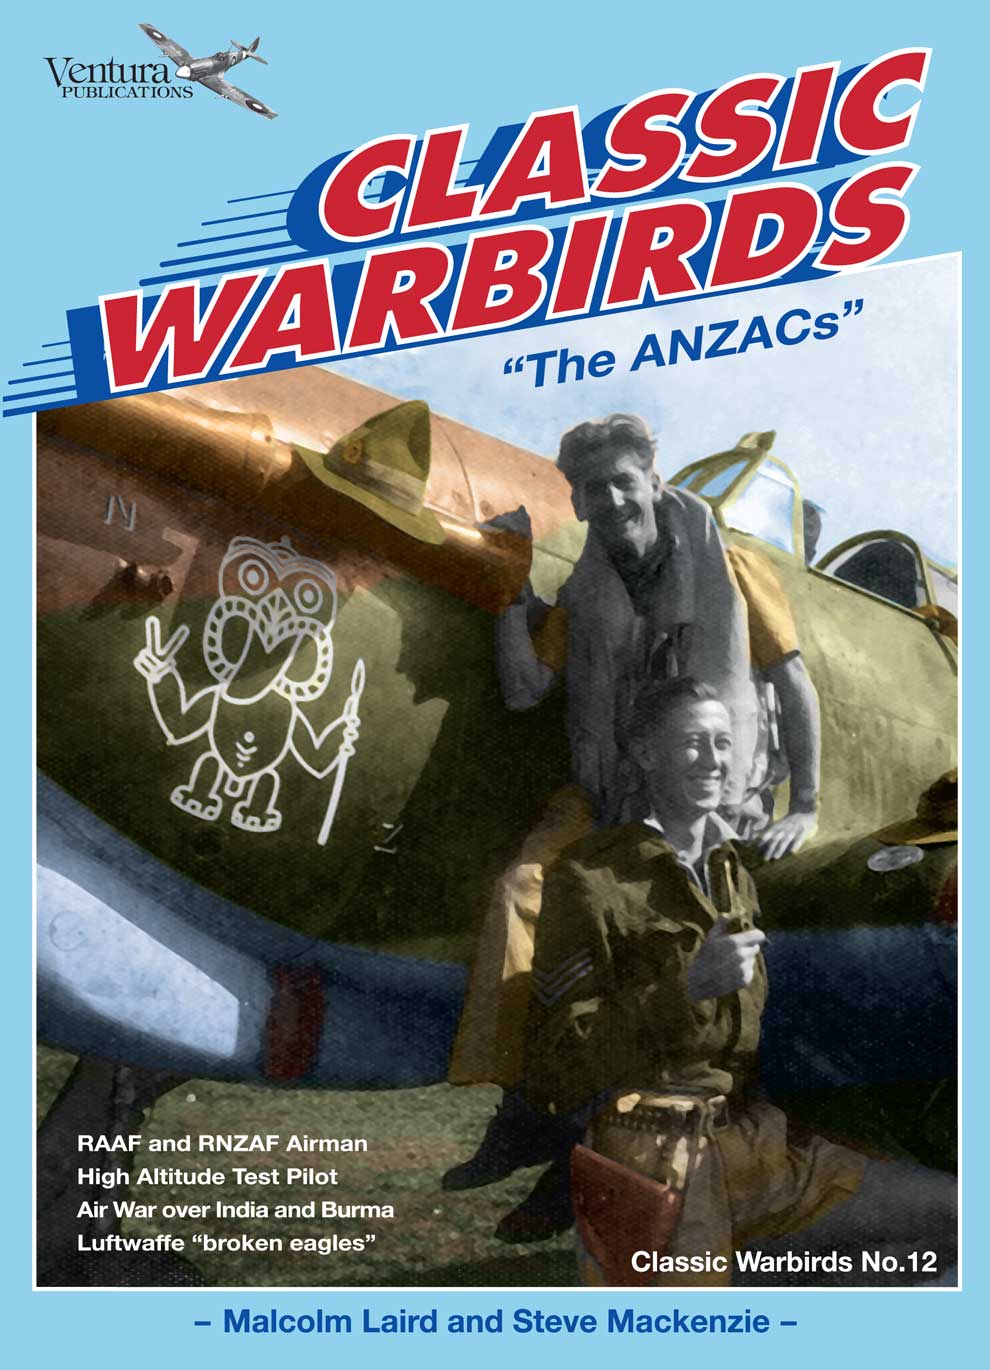 CW0812: The ANZACs